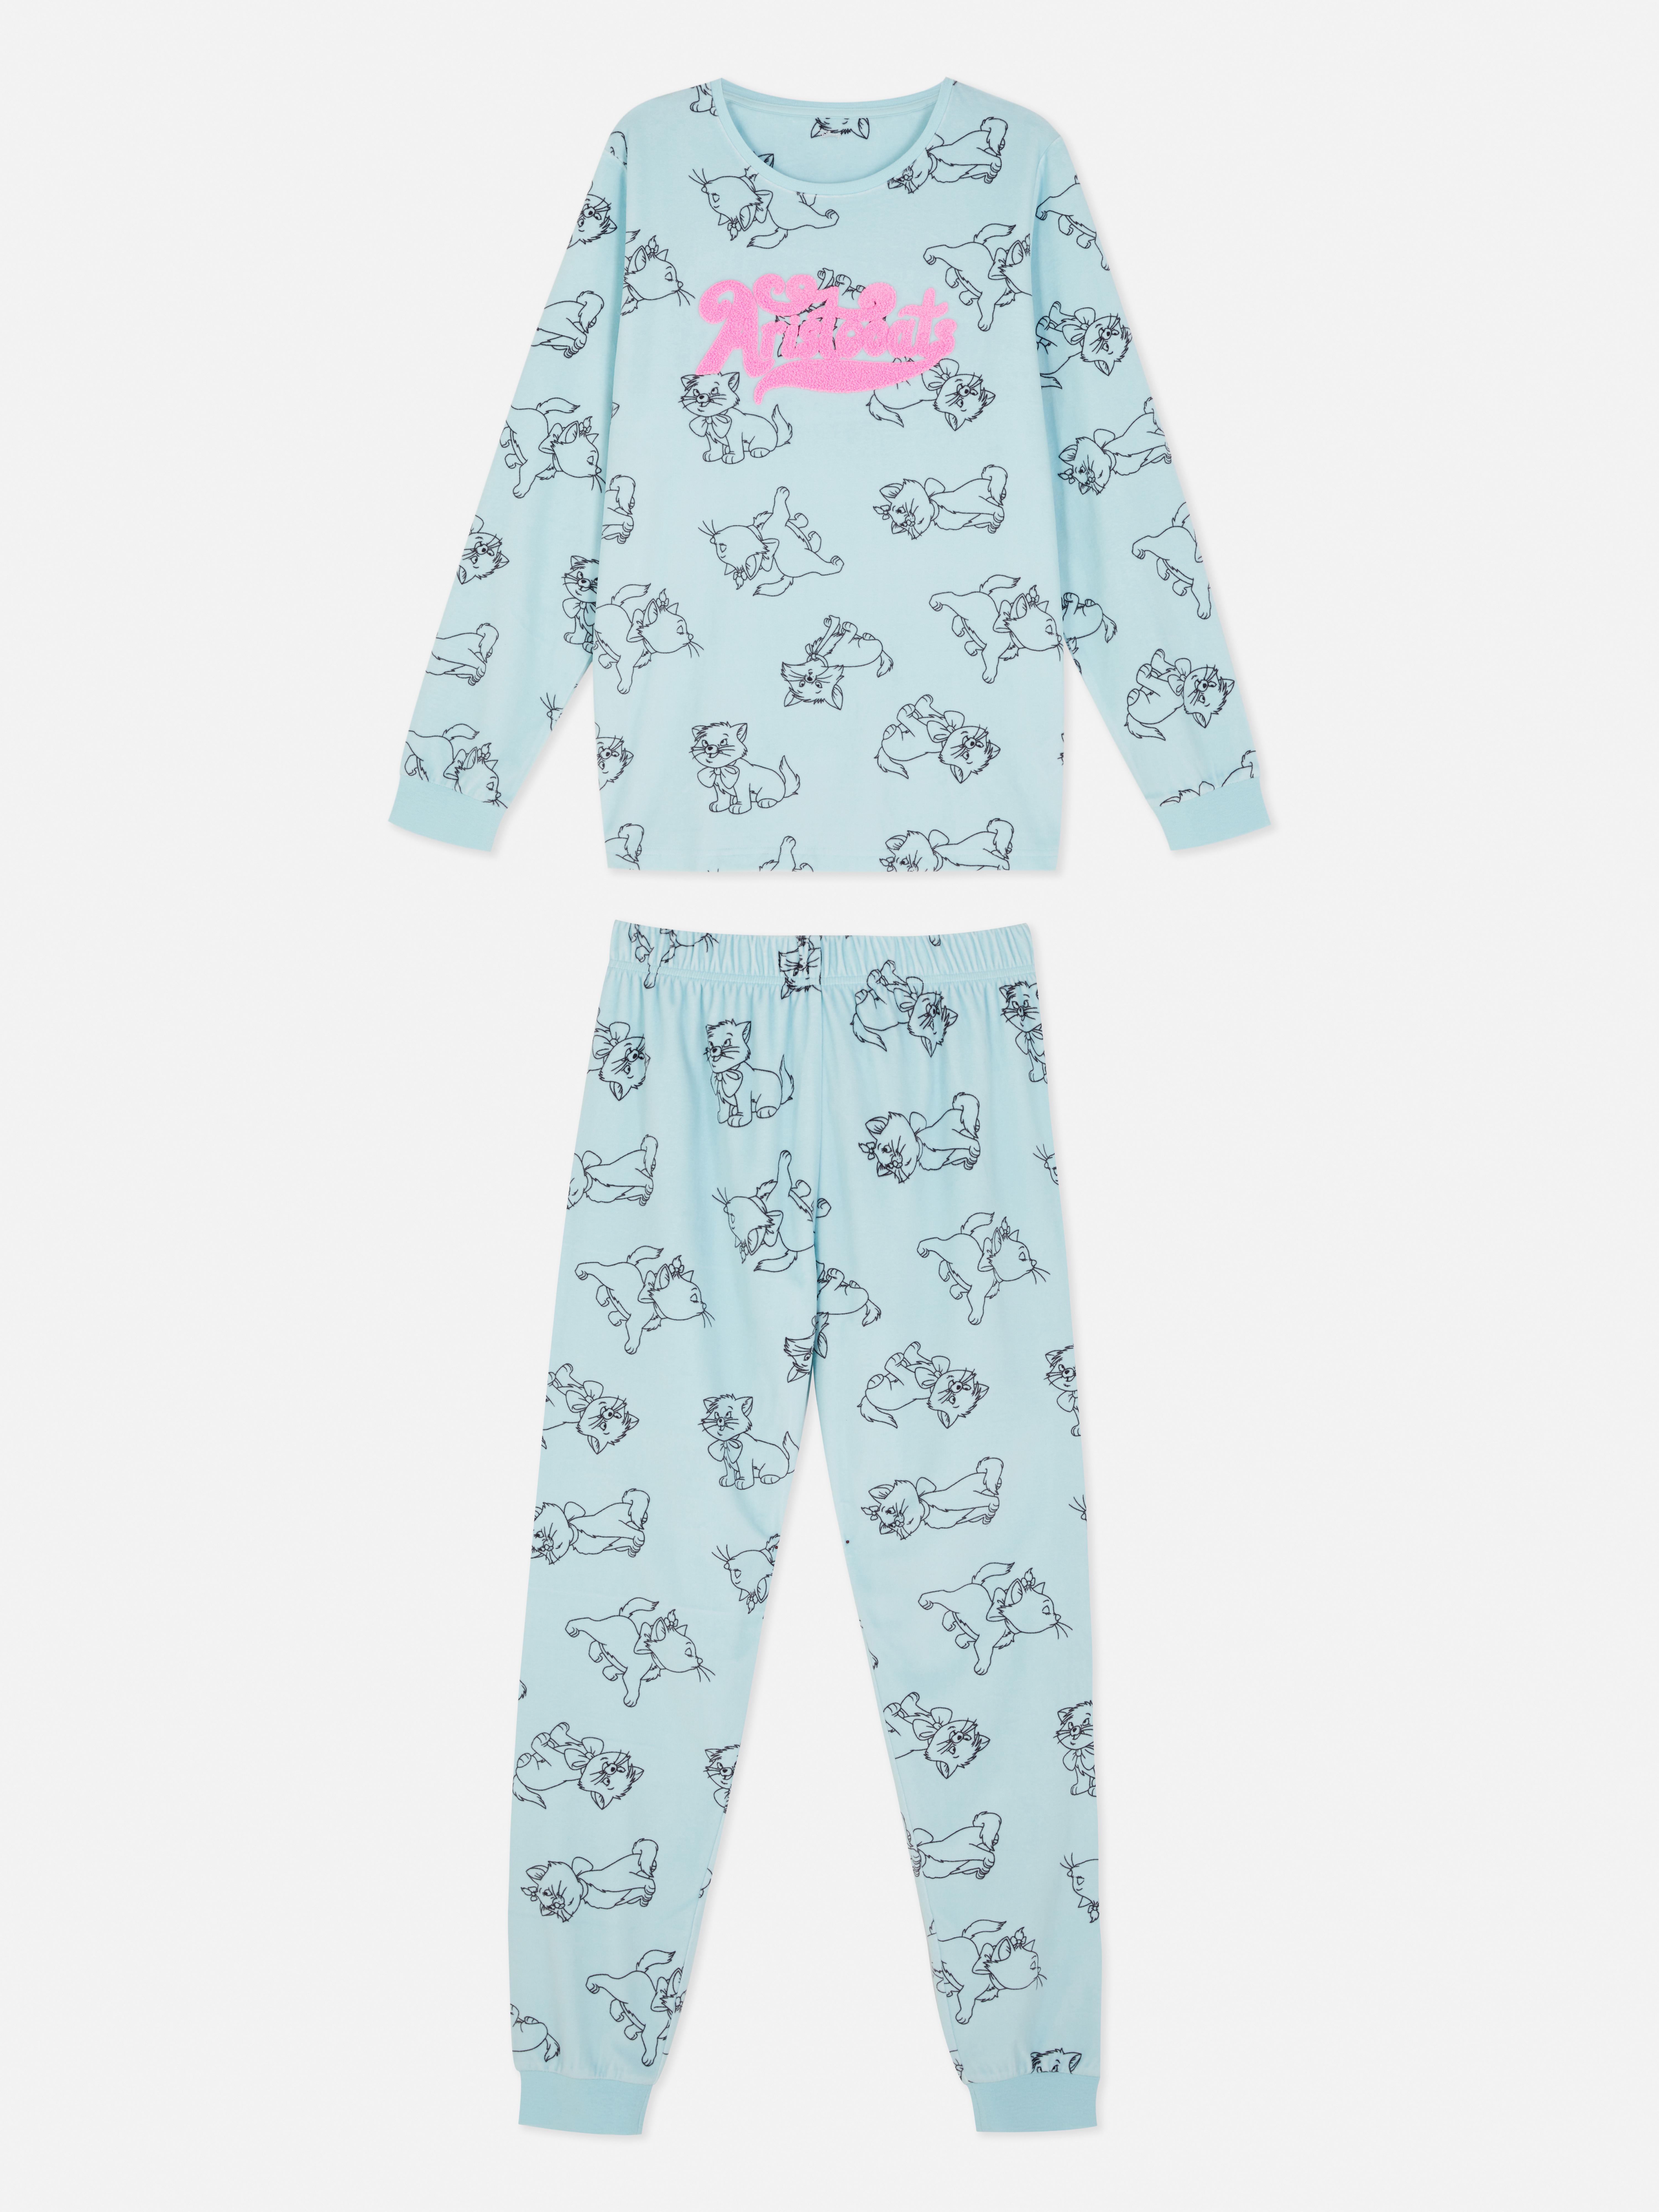 Disney’s Aristocats Pyjama Set